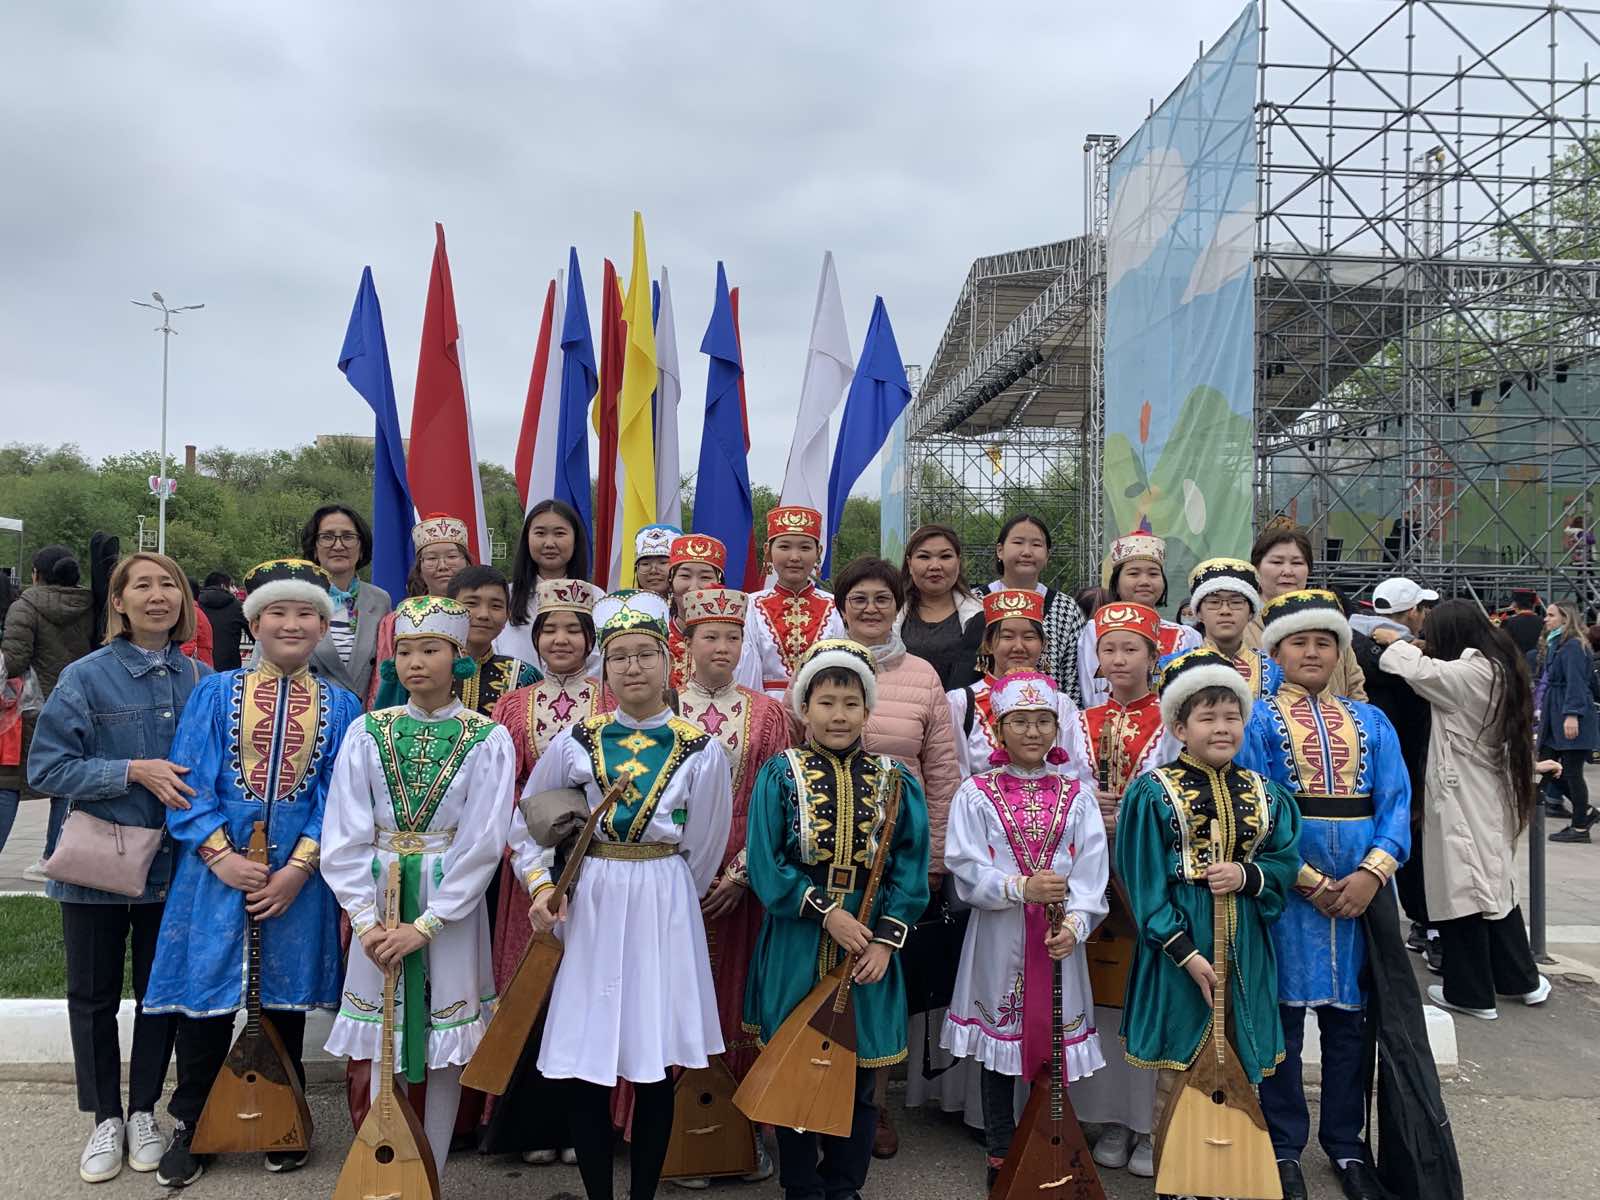 Сегодня учащиеся и преподаватели отделения калмыцких народных инструментов приняли участие в флешмобе "300 домбристов" в рамках церемонии закрытия Фестиваля тюльпанов